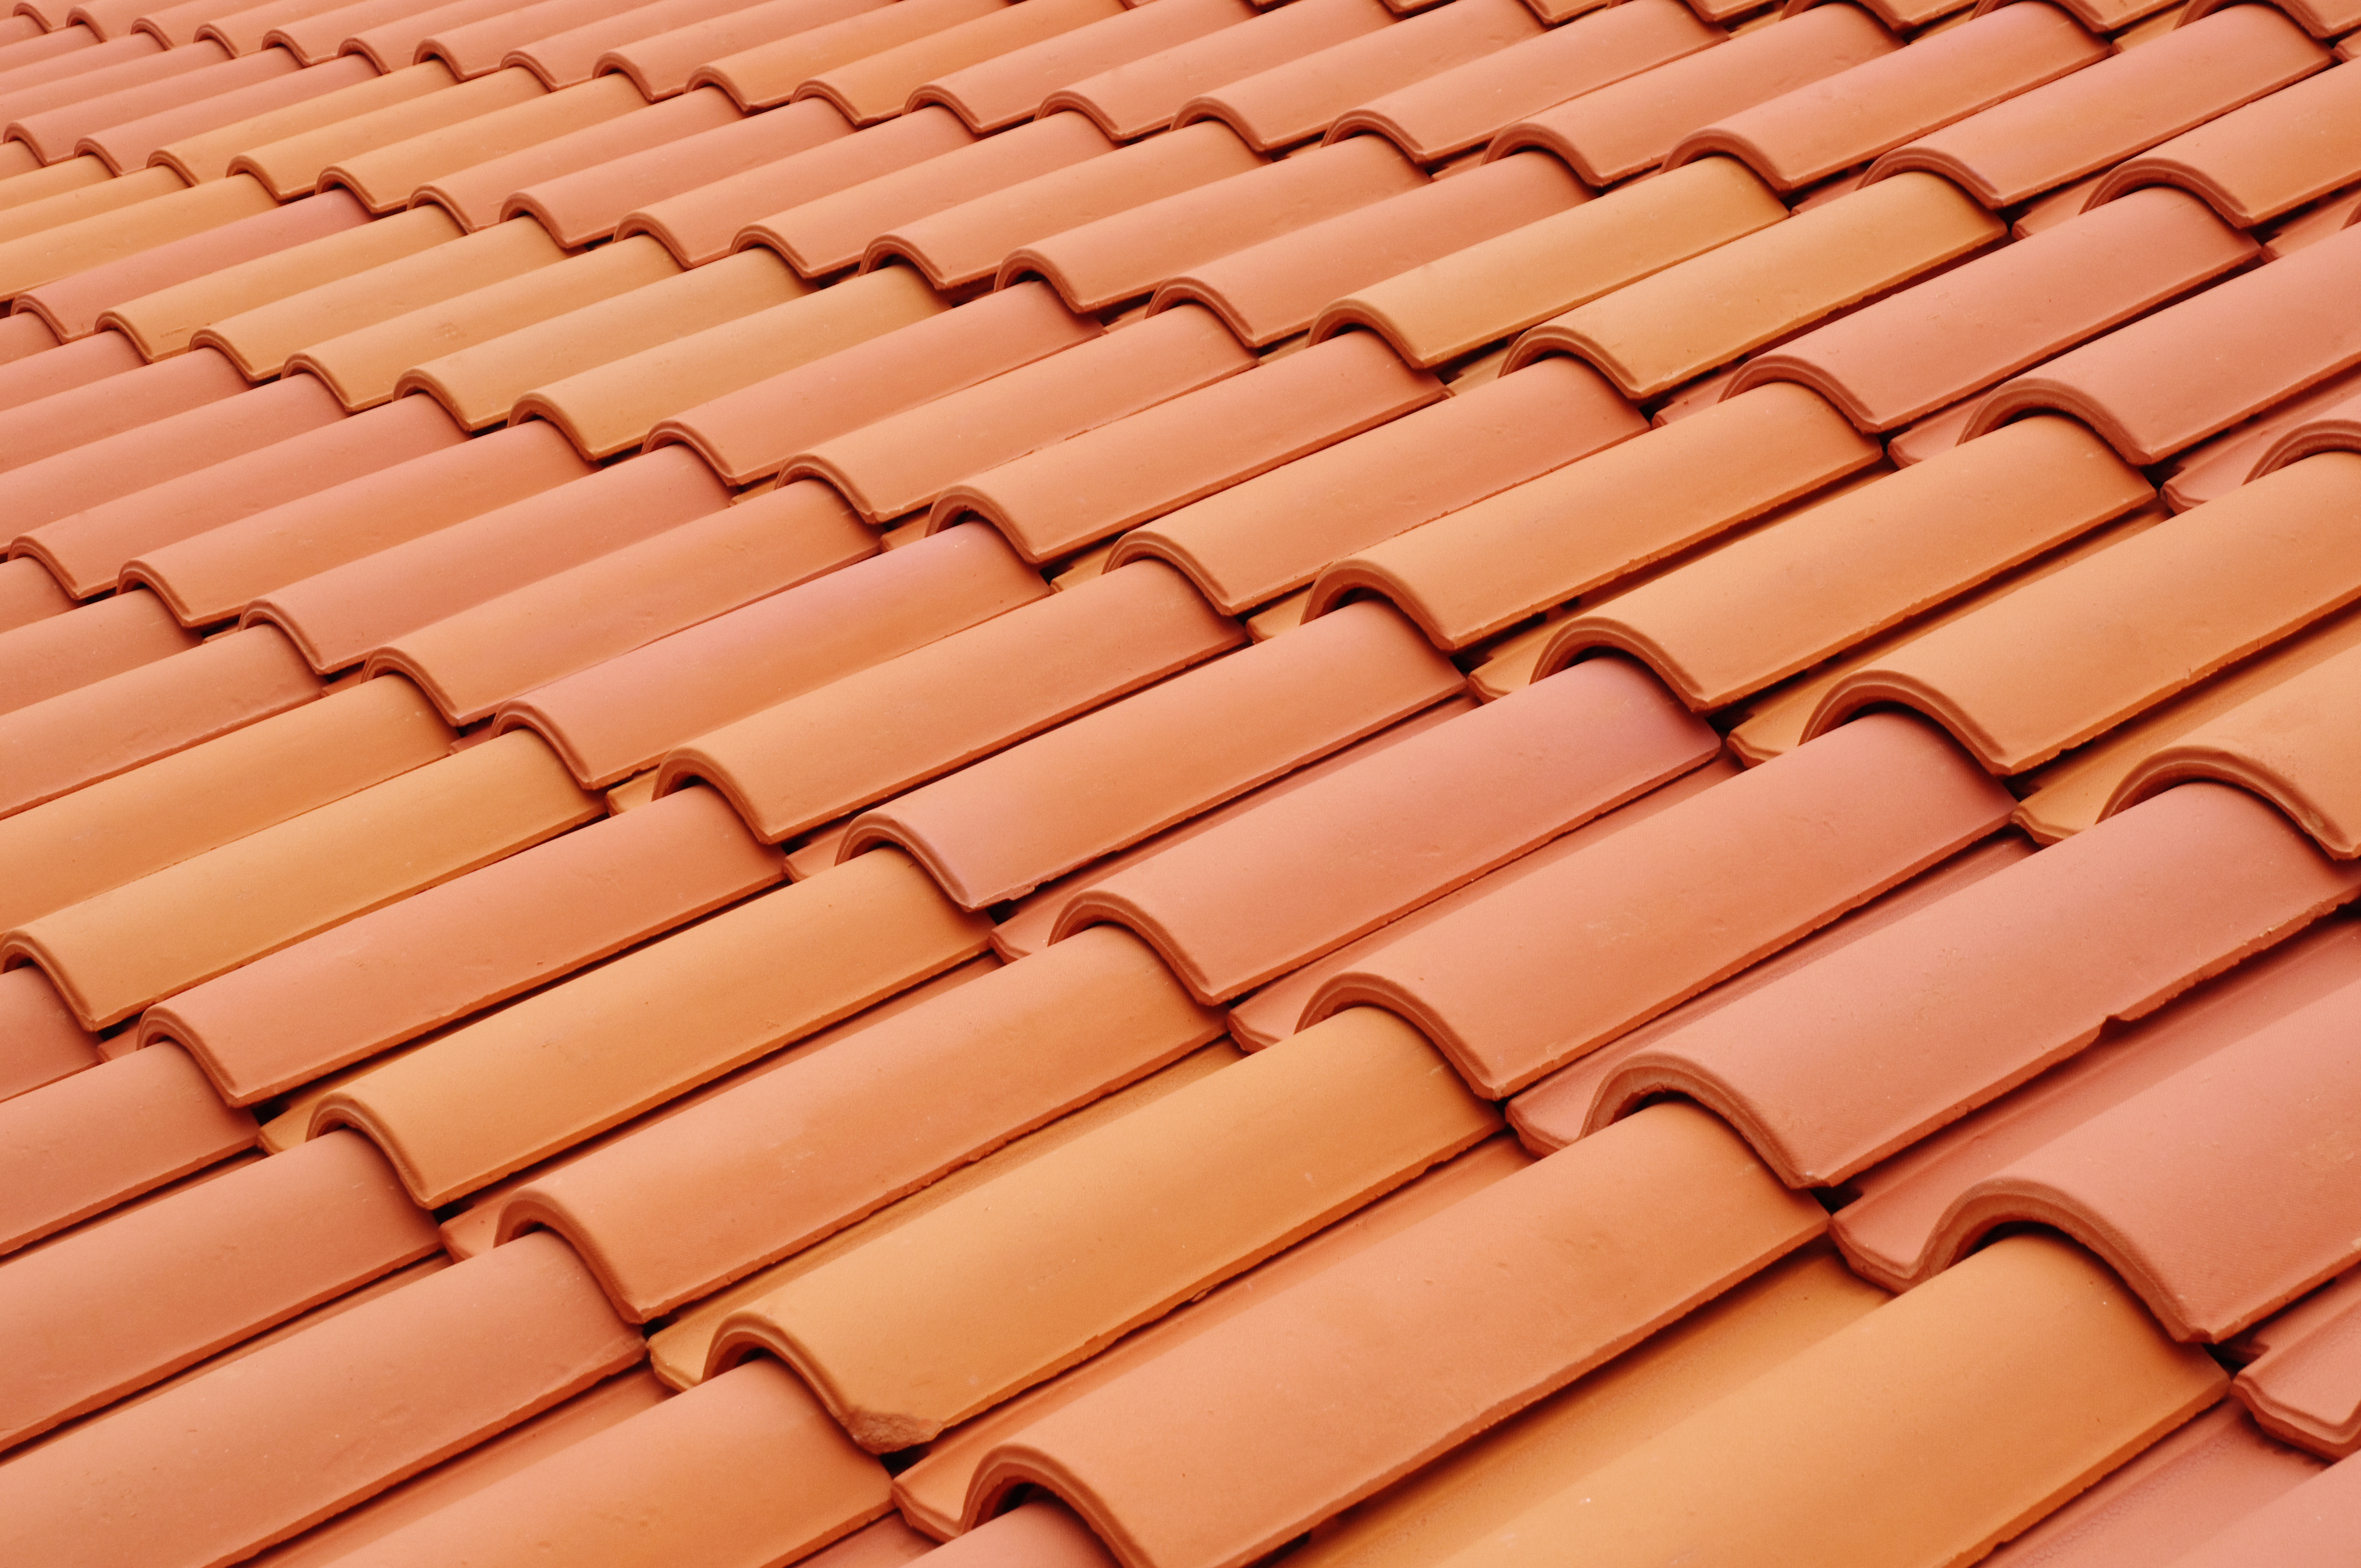 Les tuiles sont disposées de manière à créer une couverture étanche à la toiture. © Isabela66, Adobe Stock